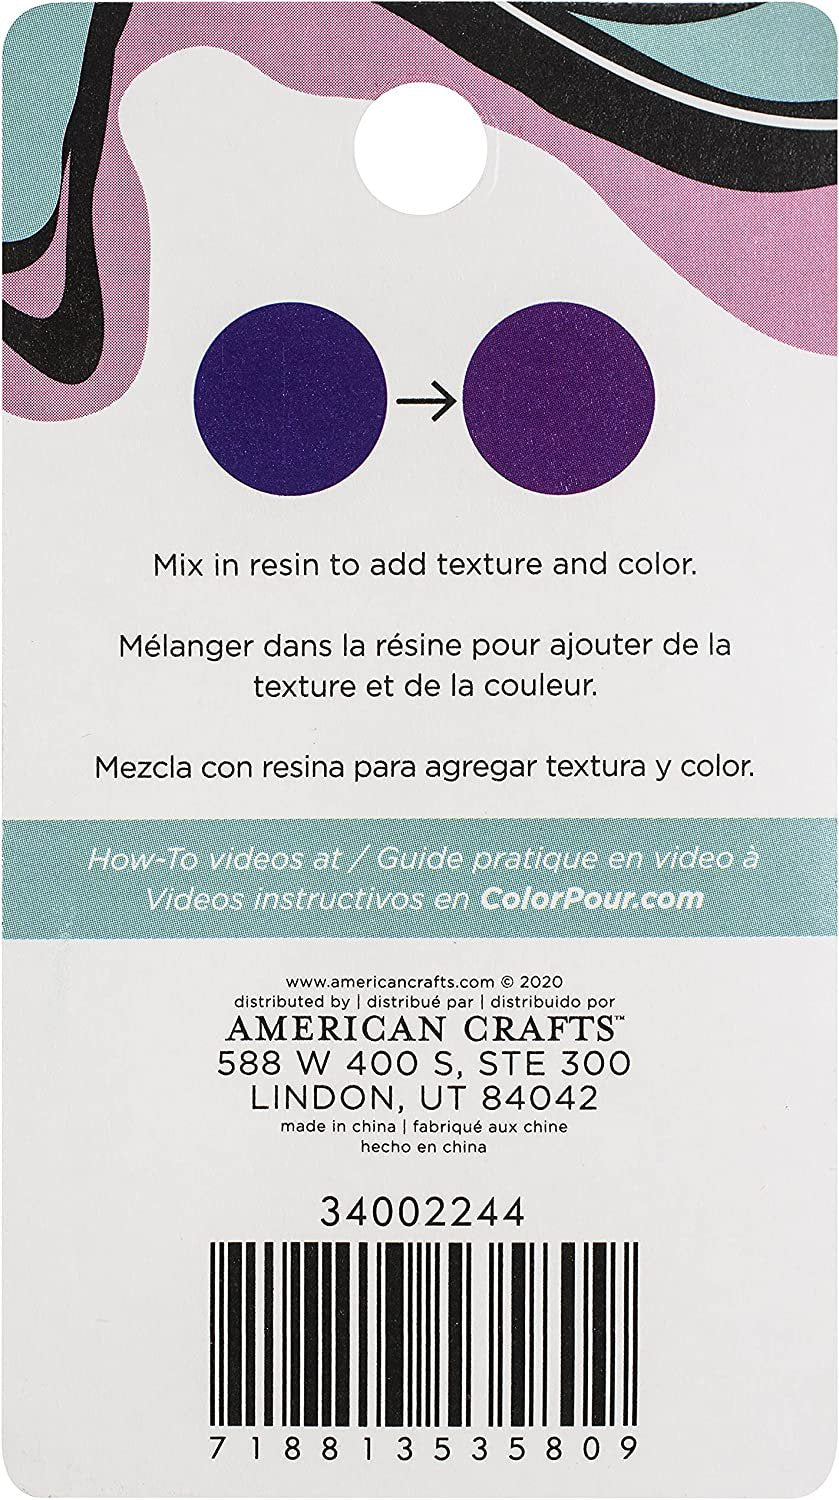 AMC Color Pour Resin Dye TP 12Oz Blue to Purple